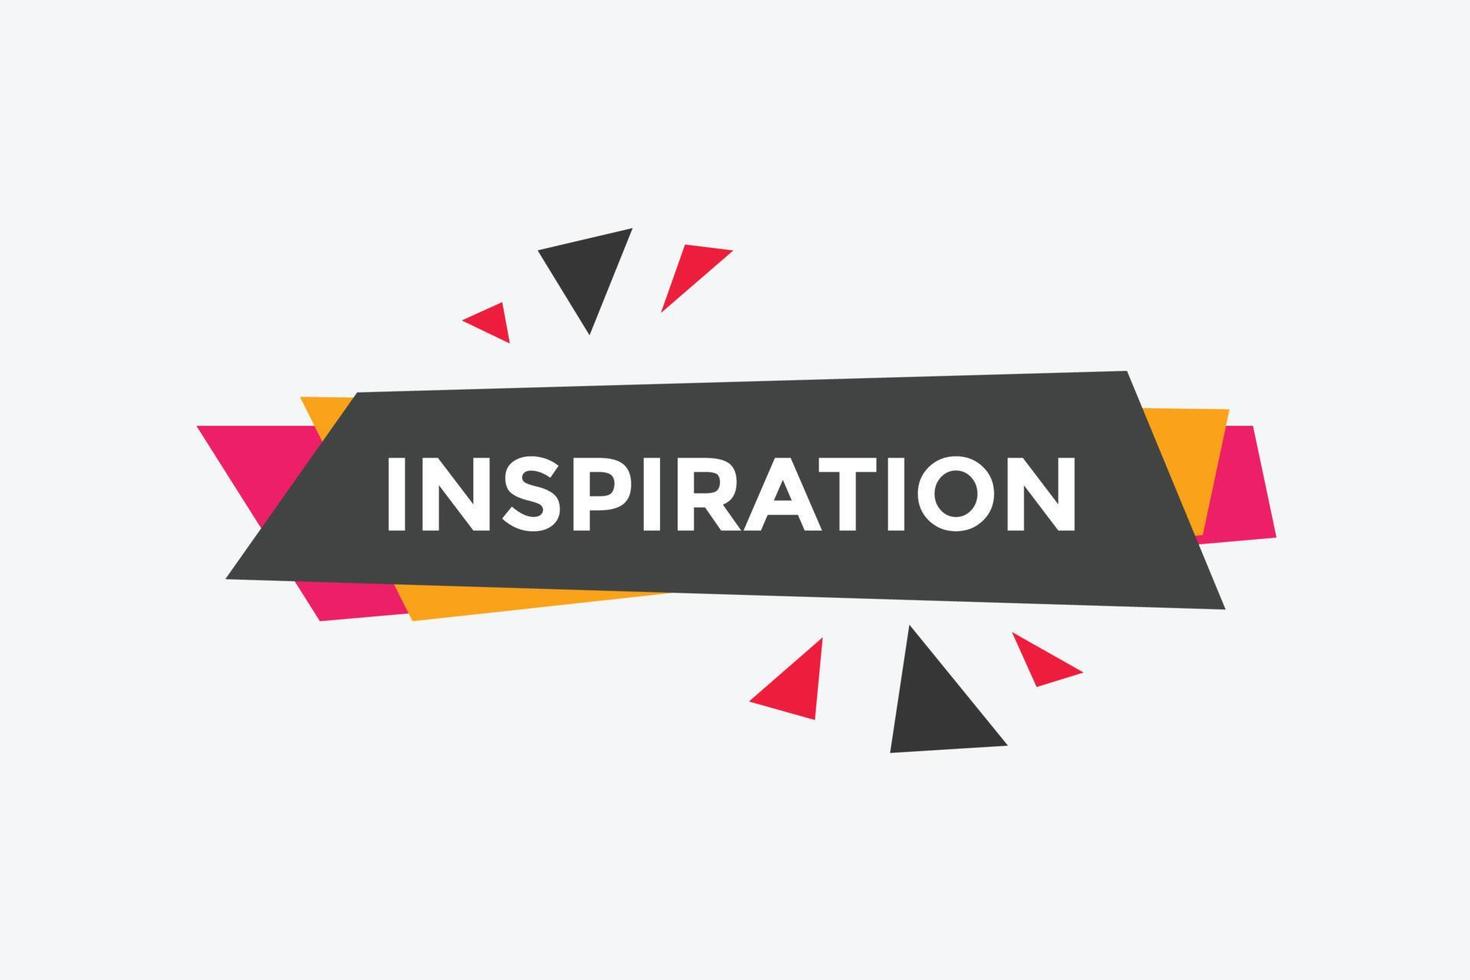 inspiratie knop. inspiratie toespraak bubbel. kleurrijk web spandoek. vector illustratie. inspiratie etiket teken sjabloon